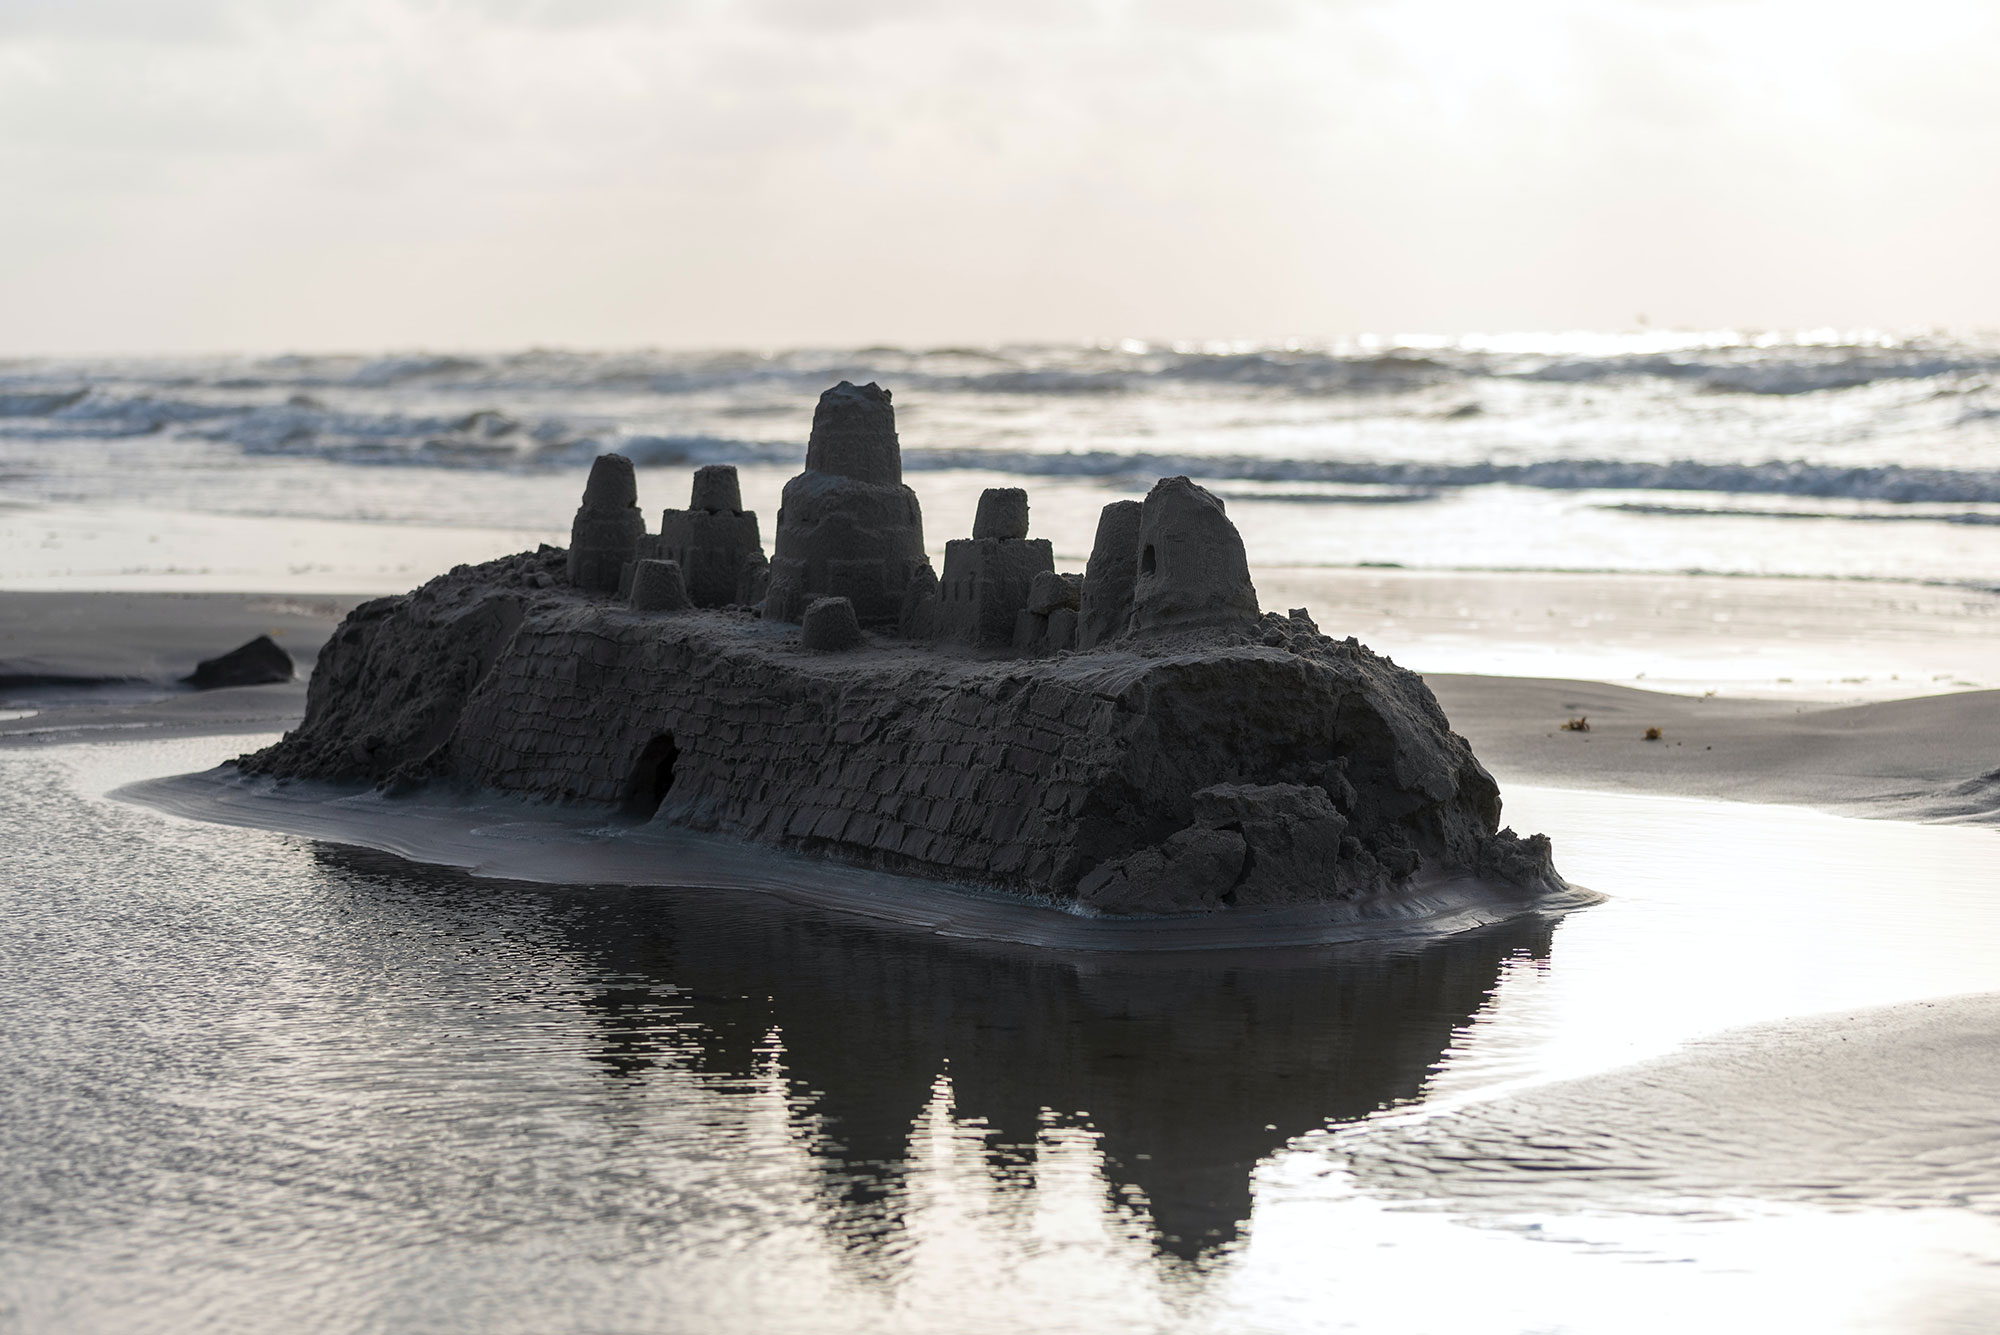 Build a sand castle